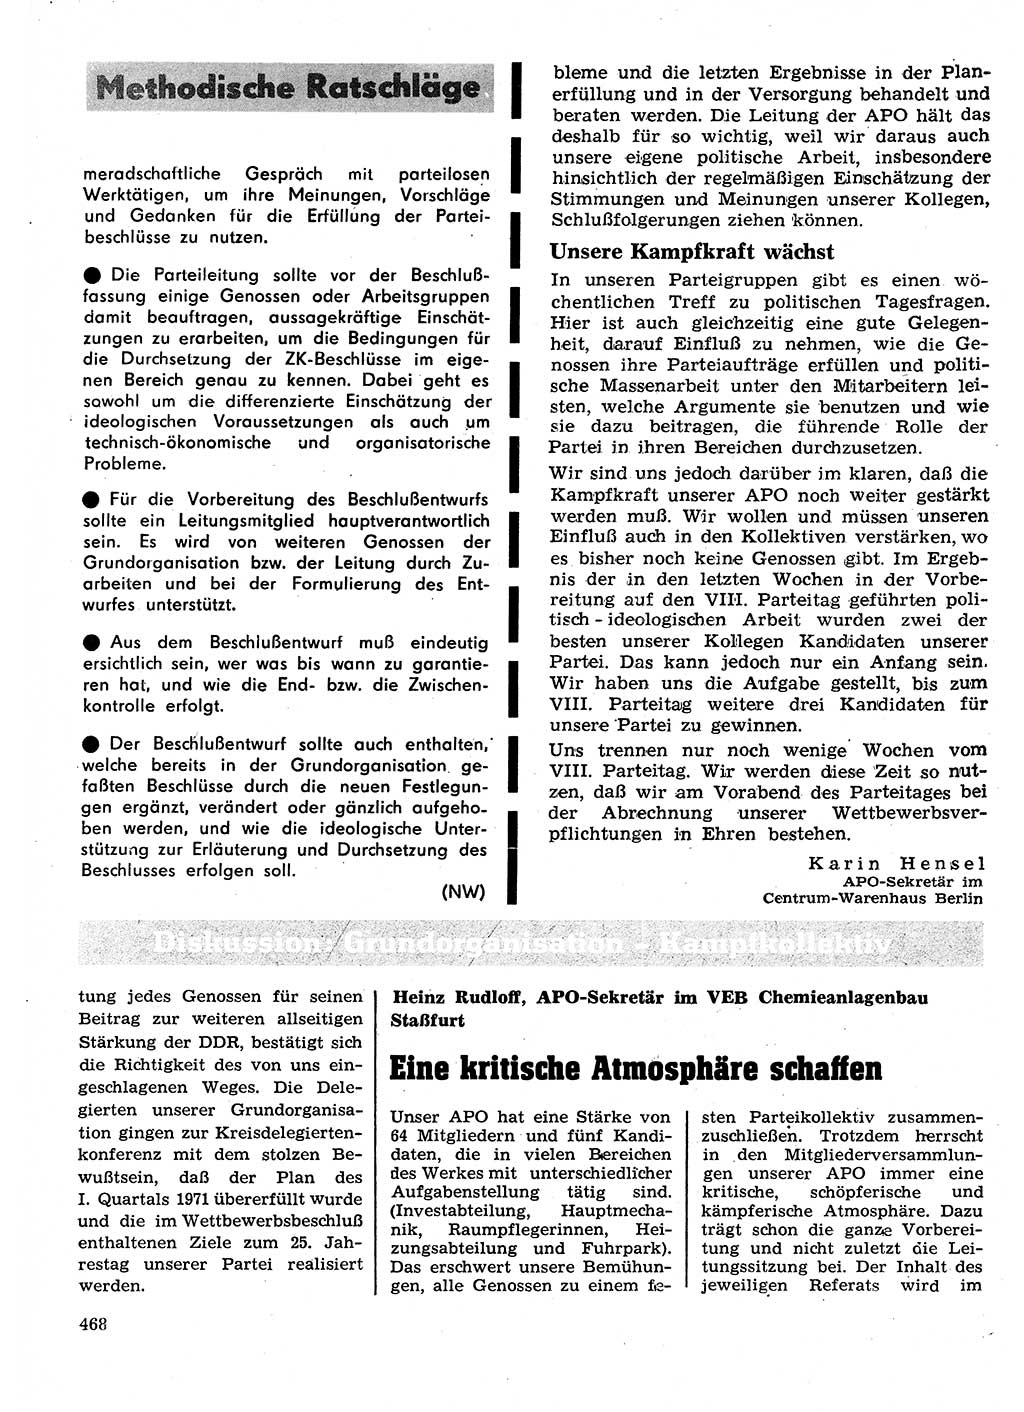 Neuer Weg (NW), Organ des Zentralkomitees (ZK) der SED (Sozialistische Einheitspartei Deutschlands) für Fragen des Parteilebens, 26. Jahrgang [Deutsche Demokratische Republik (DDR)] 1971, Seite 468 (NW ZK SED DDR 1971, S. 468)